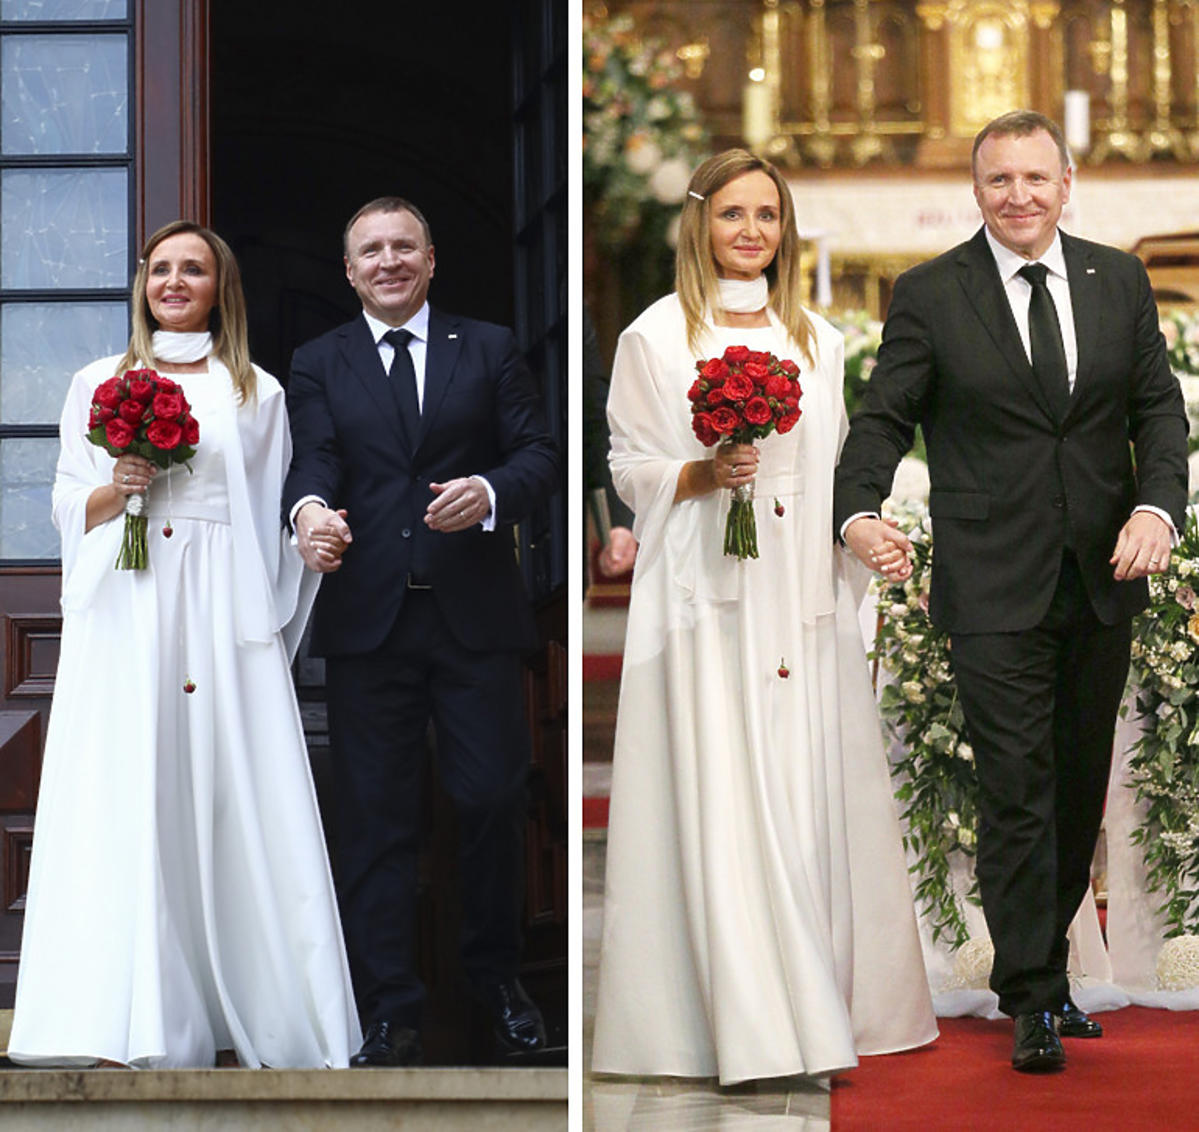 Ślub Jacka Kurskiego i Joanny Klimek w Sanktuarium Bożego Miłosierdzia w krakowskich Łagiewnikach